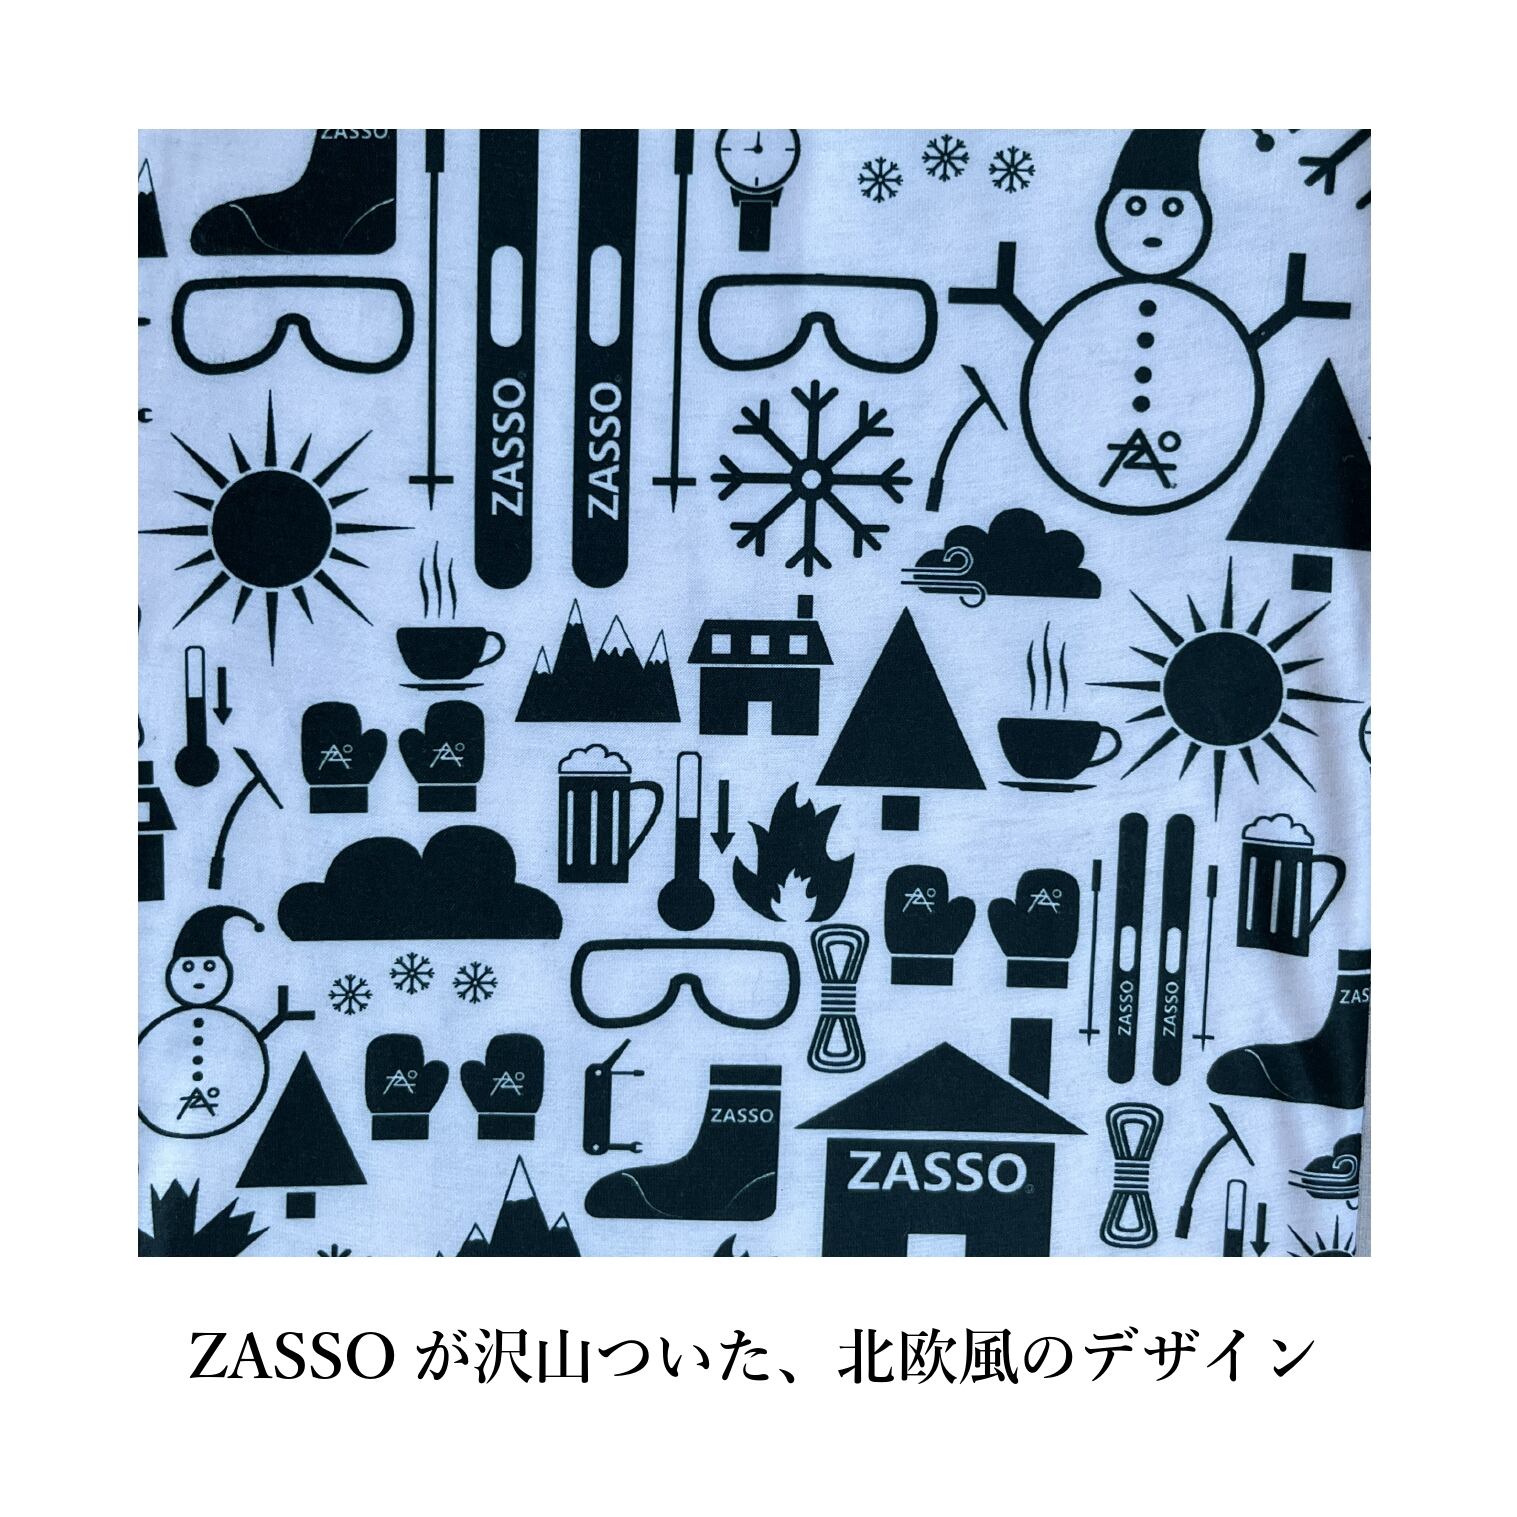 ZASSO ネックチューブ limited Edition 限定品 - スキー